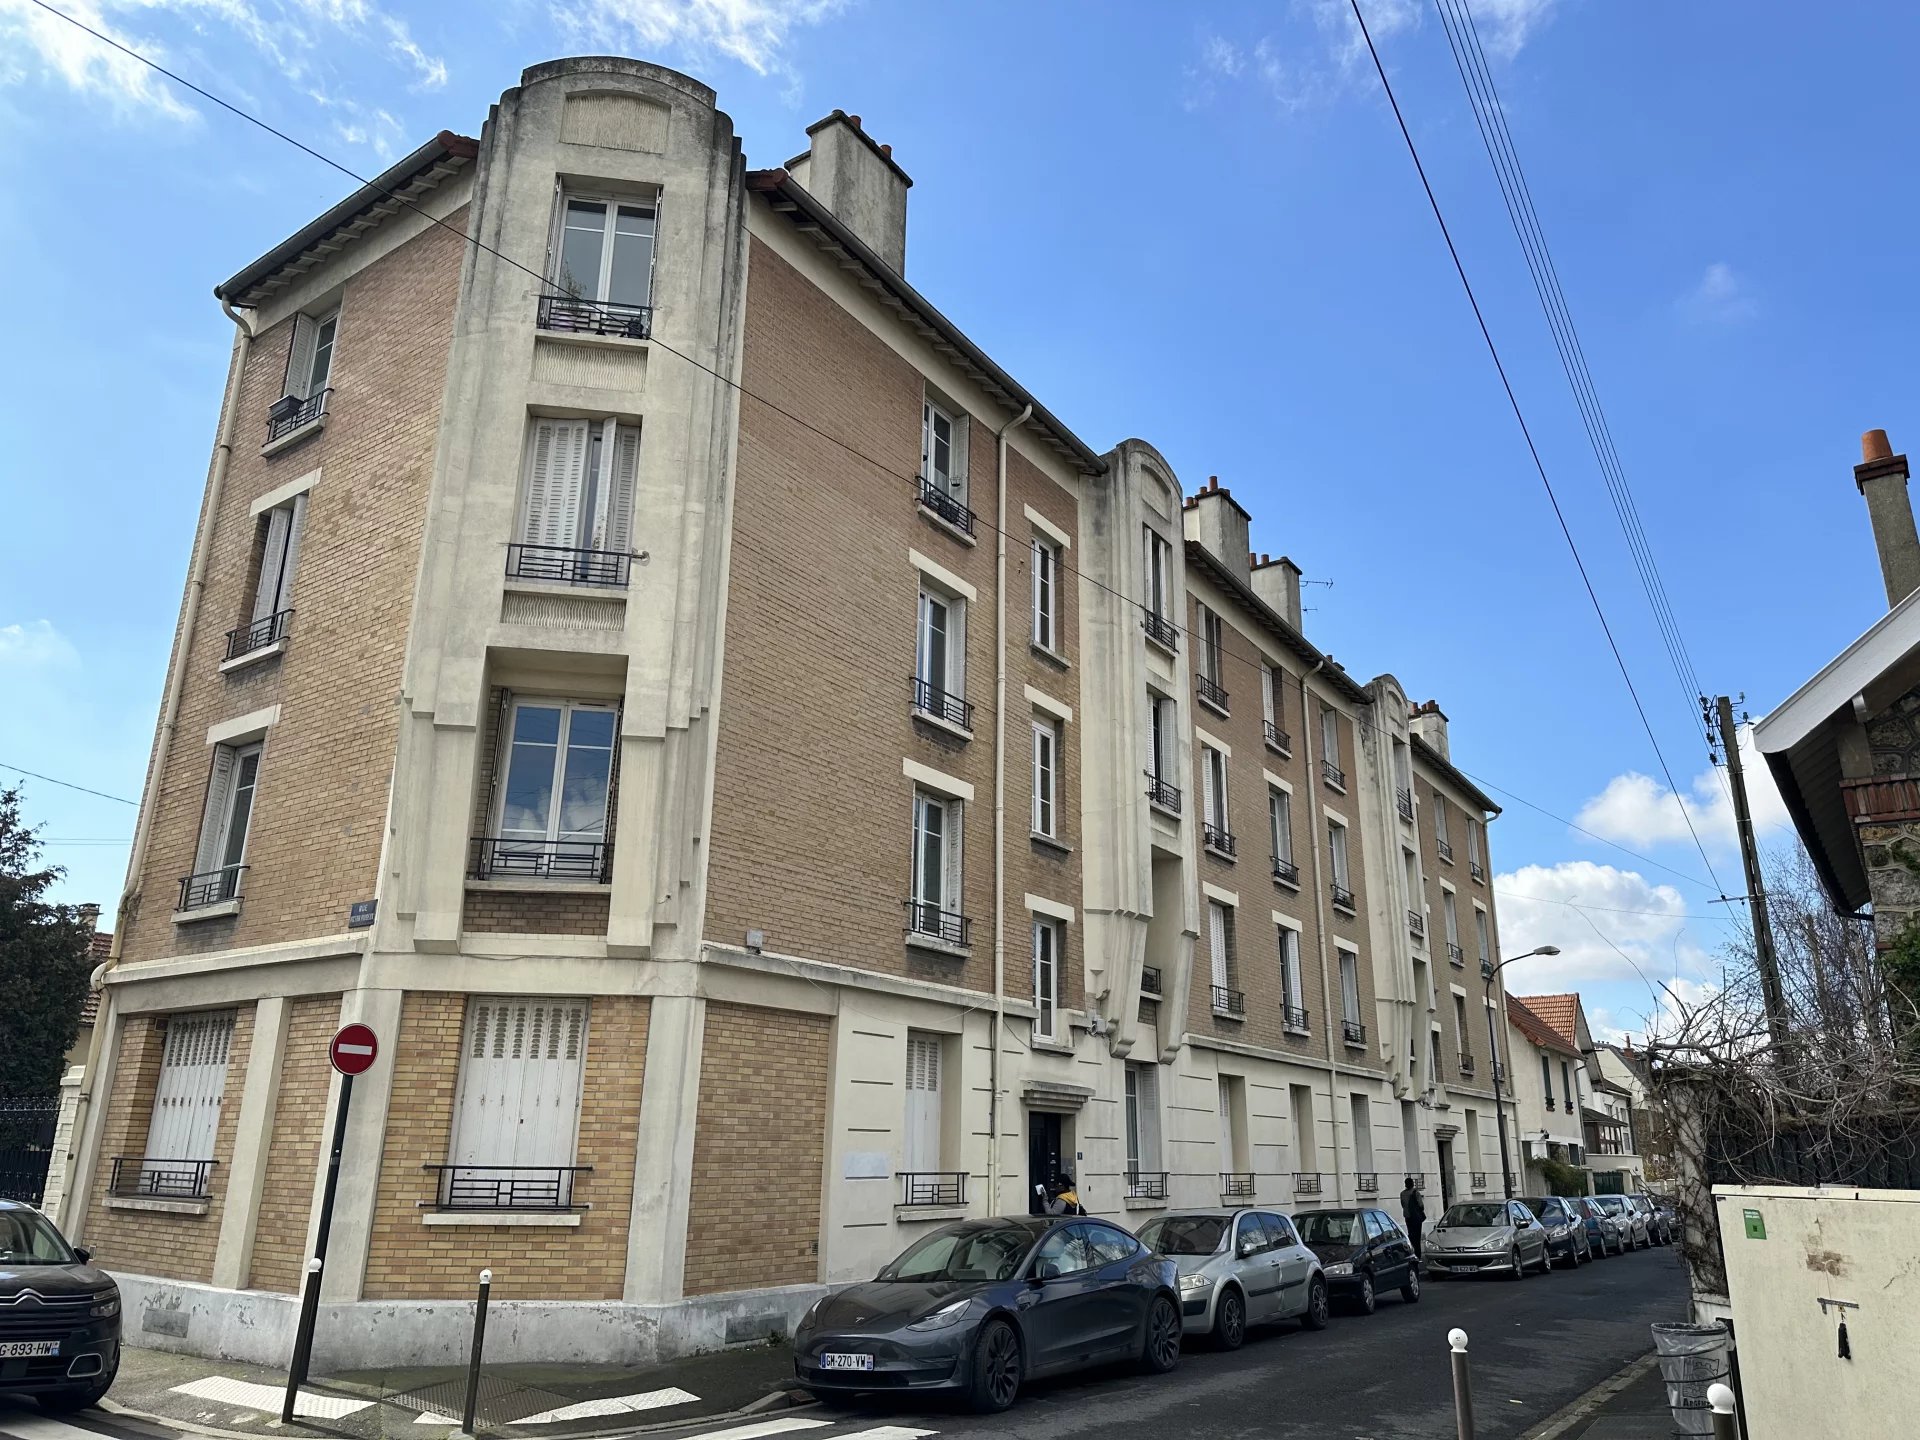 Agence immobilière de Arthurimmo.com Baillet en France